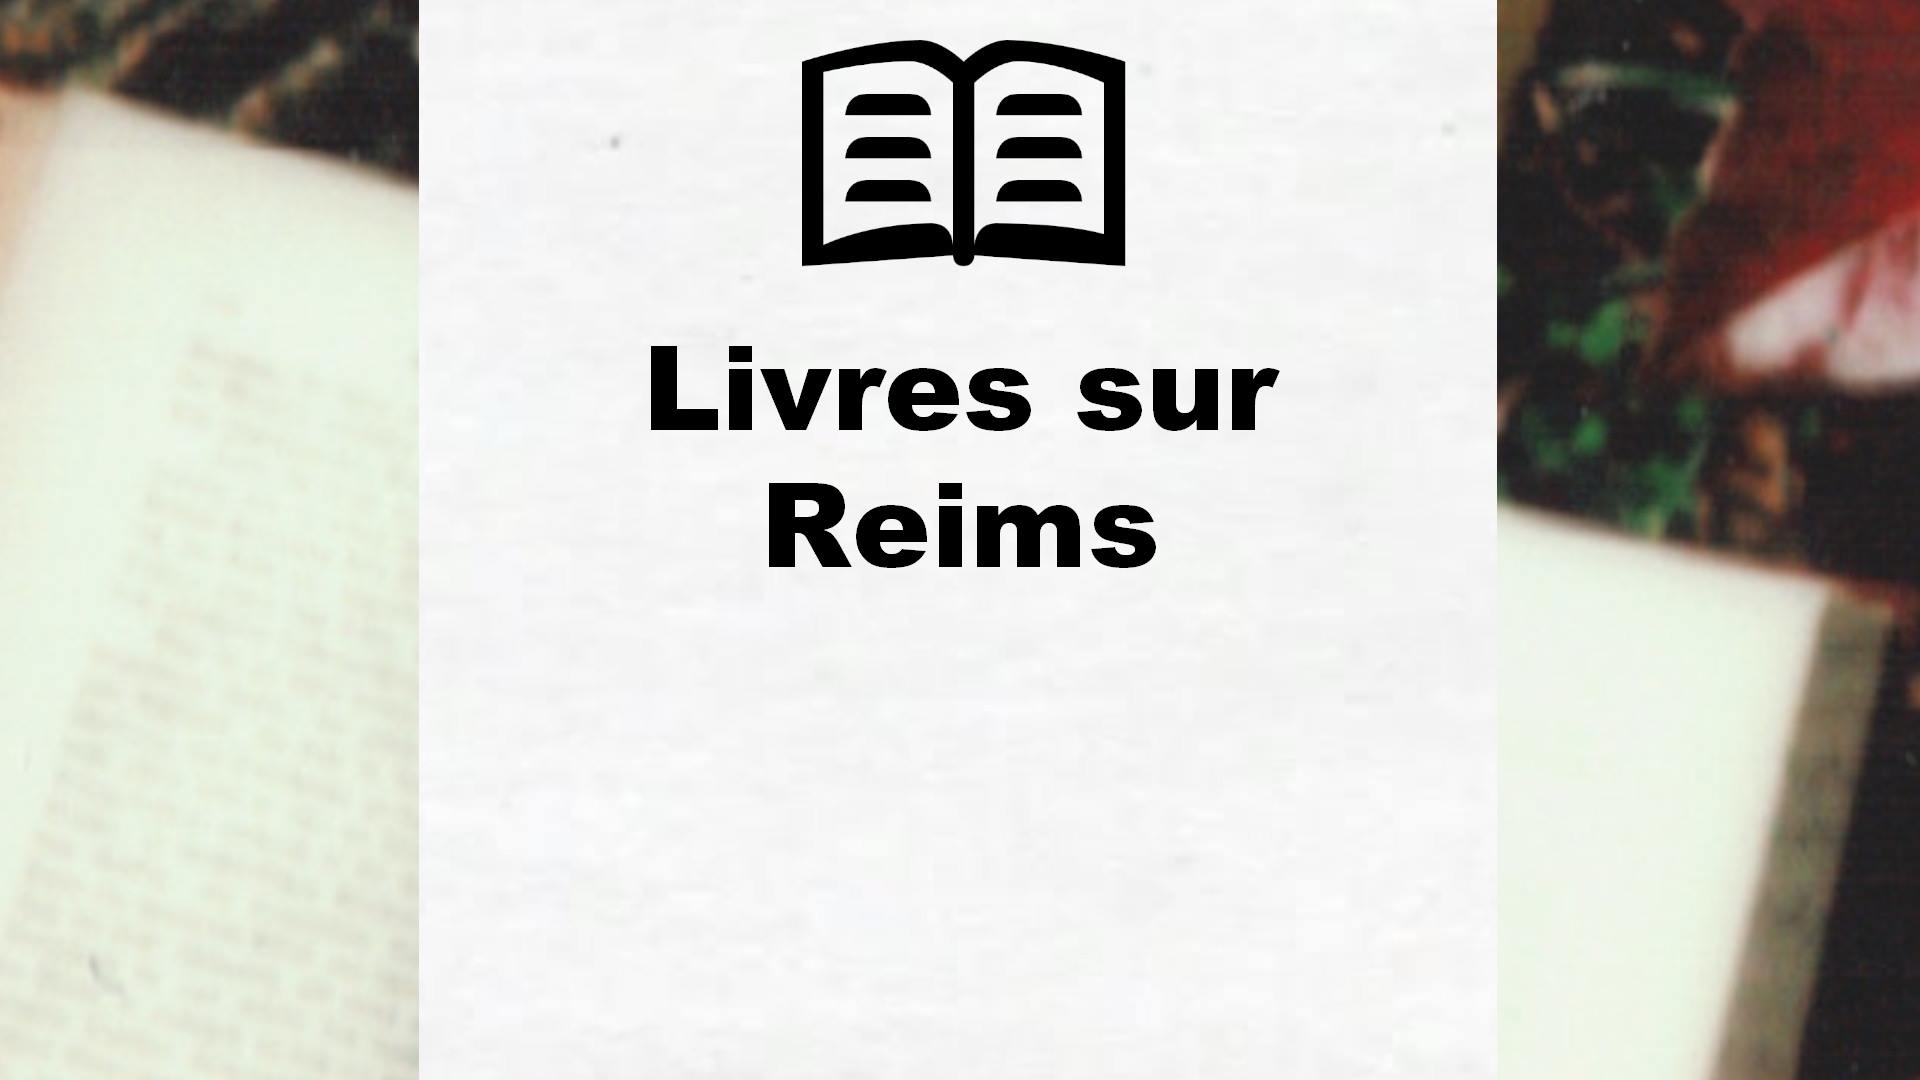 Livres sur Reims